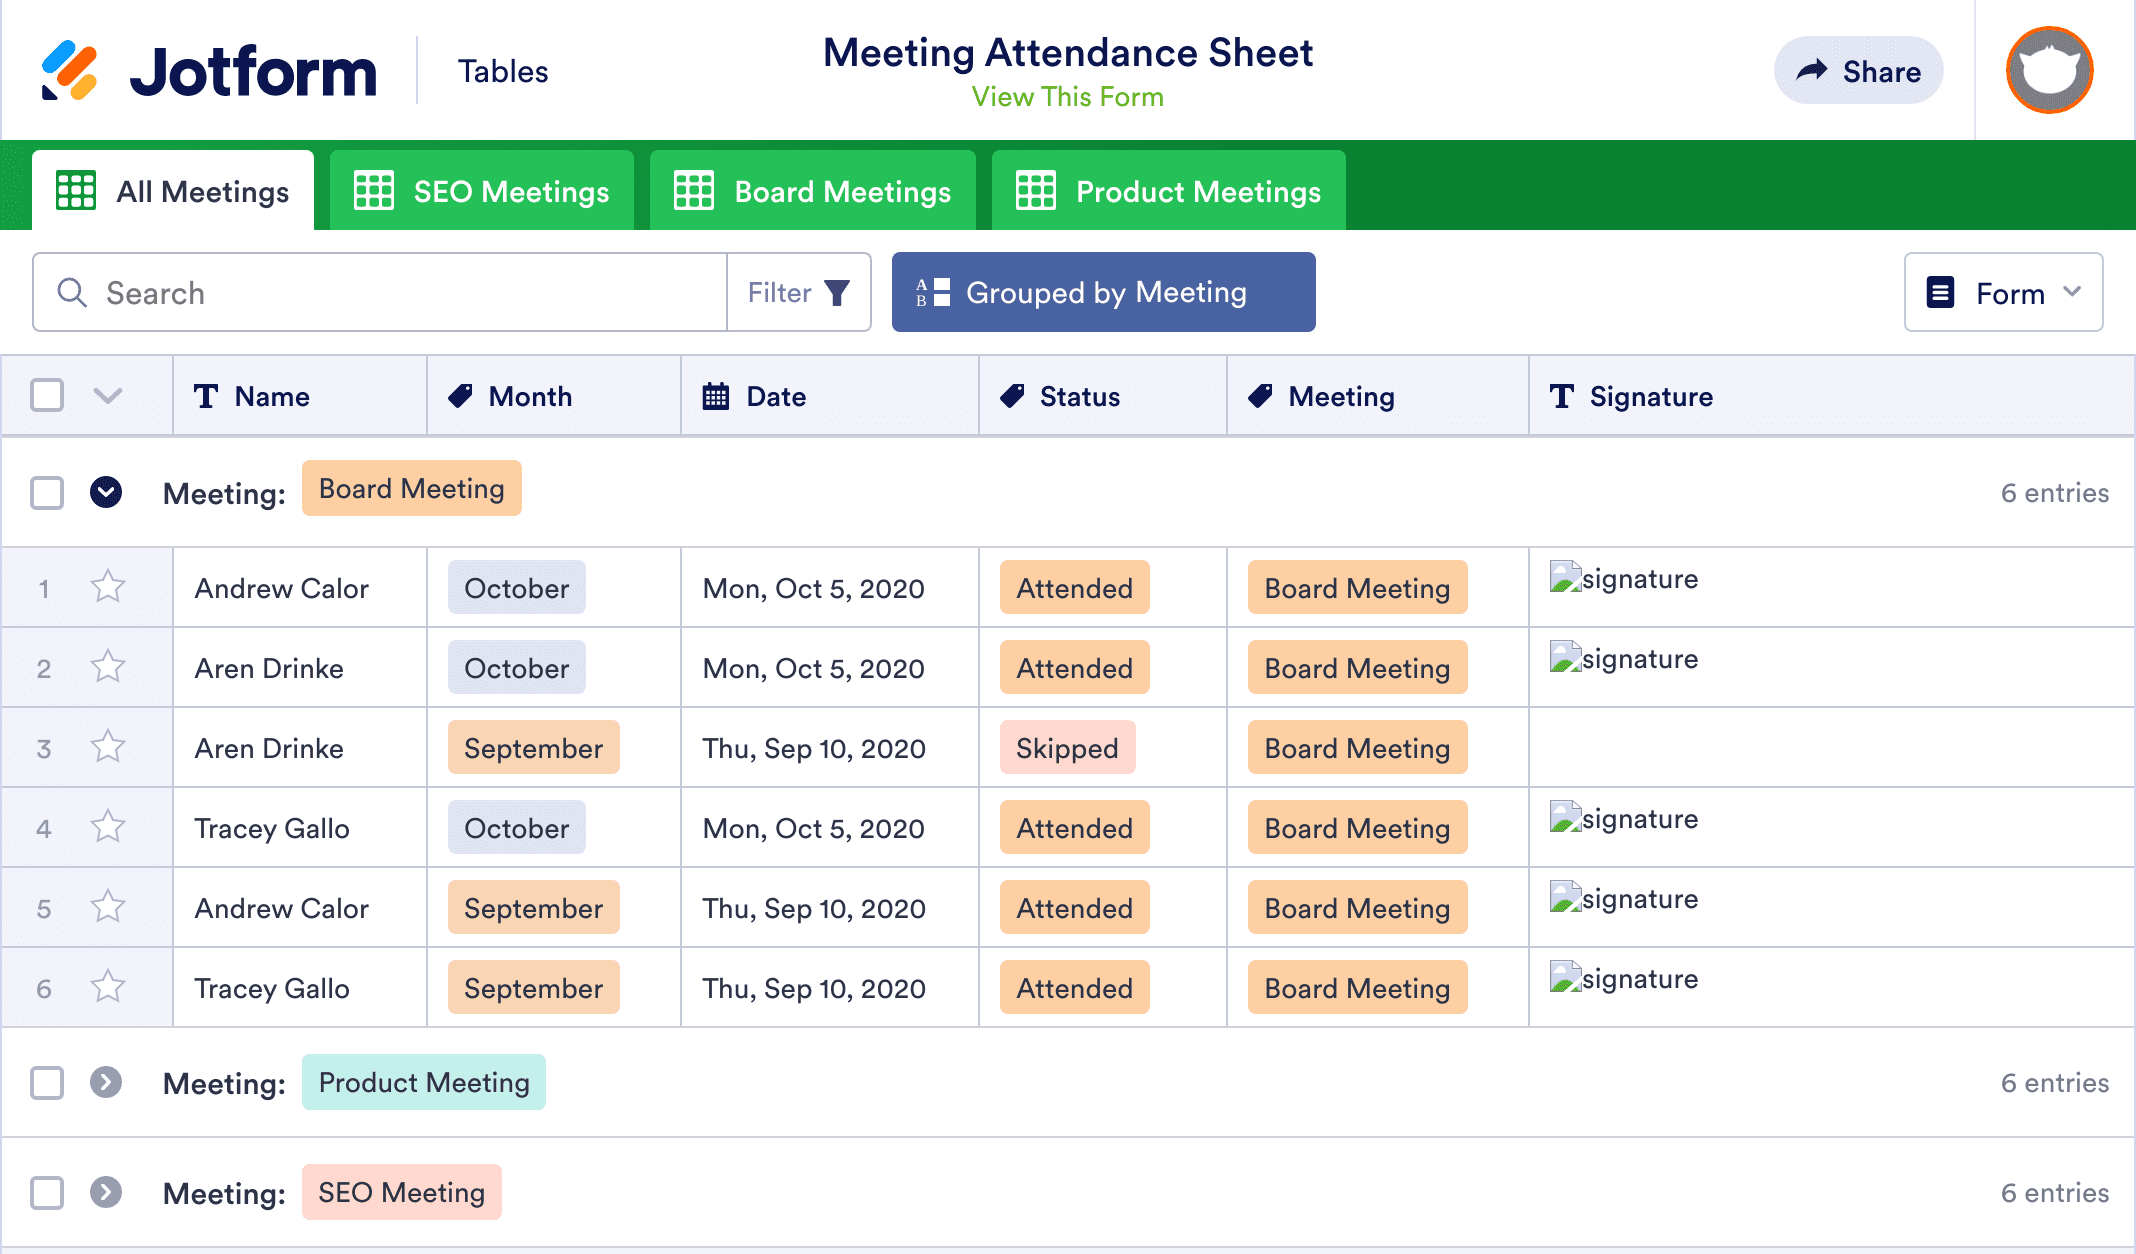 Meeting Attendance Sheet